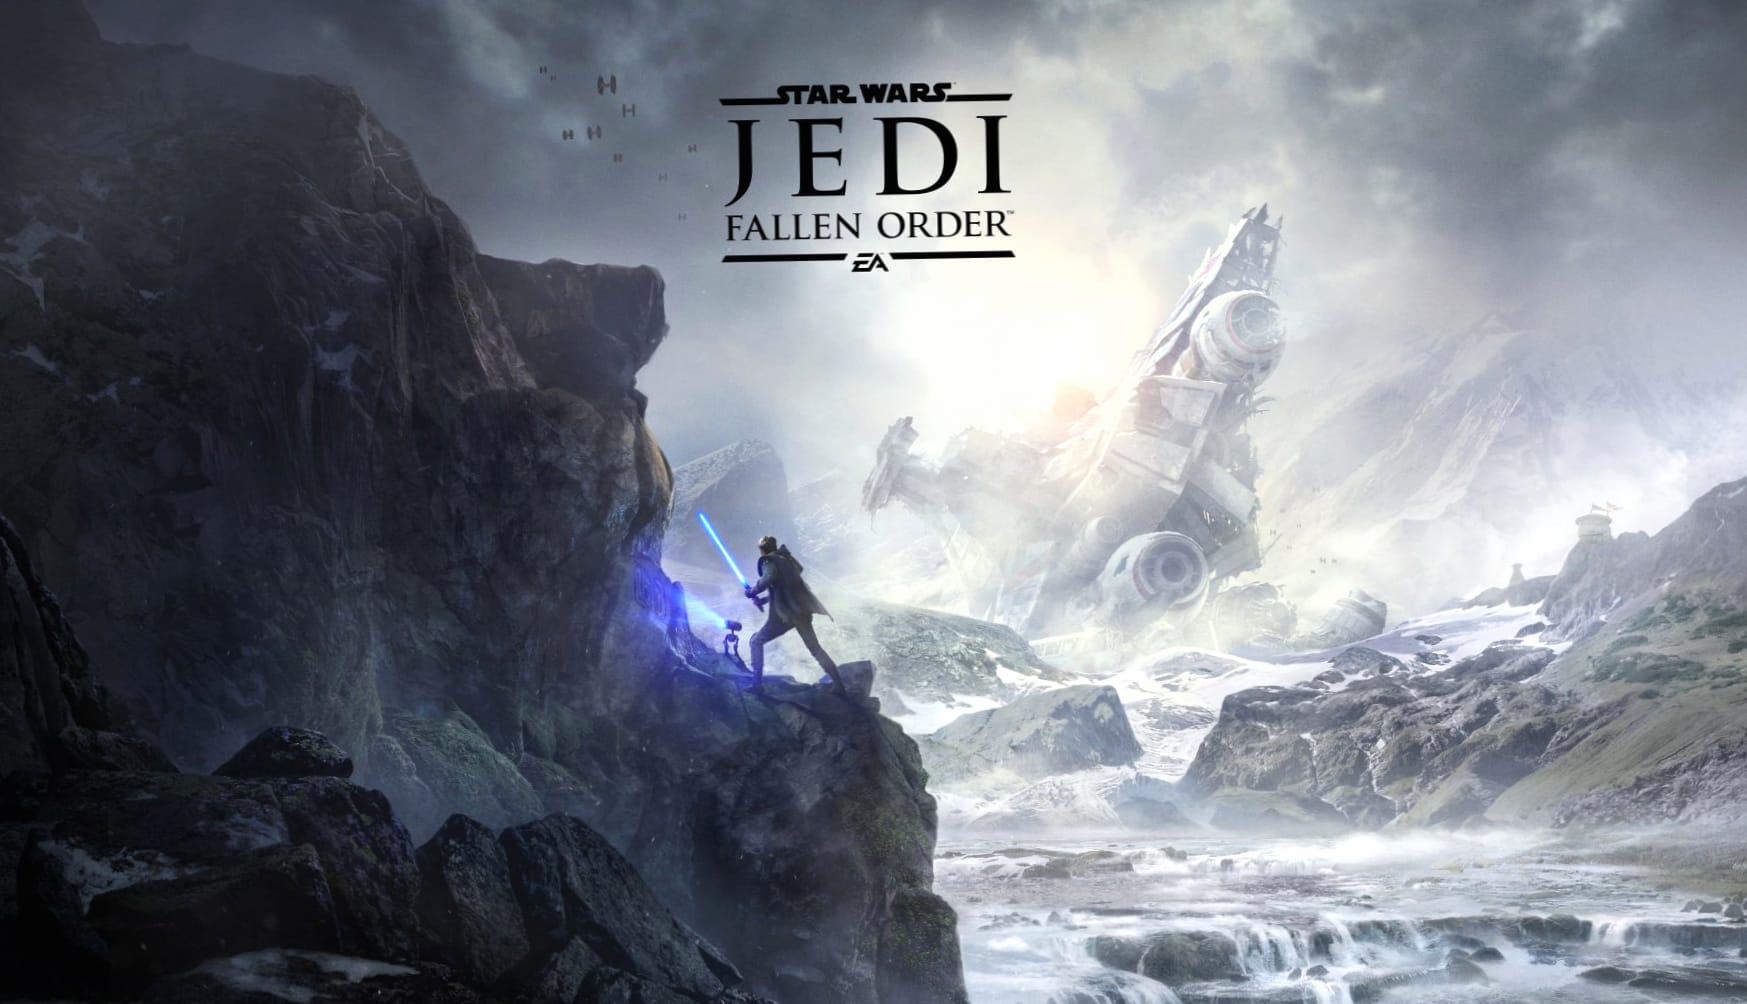 Star Wars Jedi Fallen Order at 2048 x 2048 iPad size wallpapers HD quality